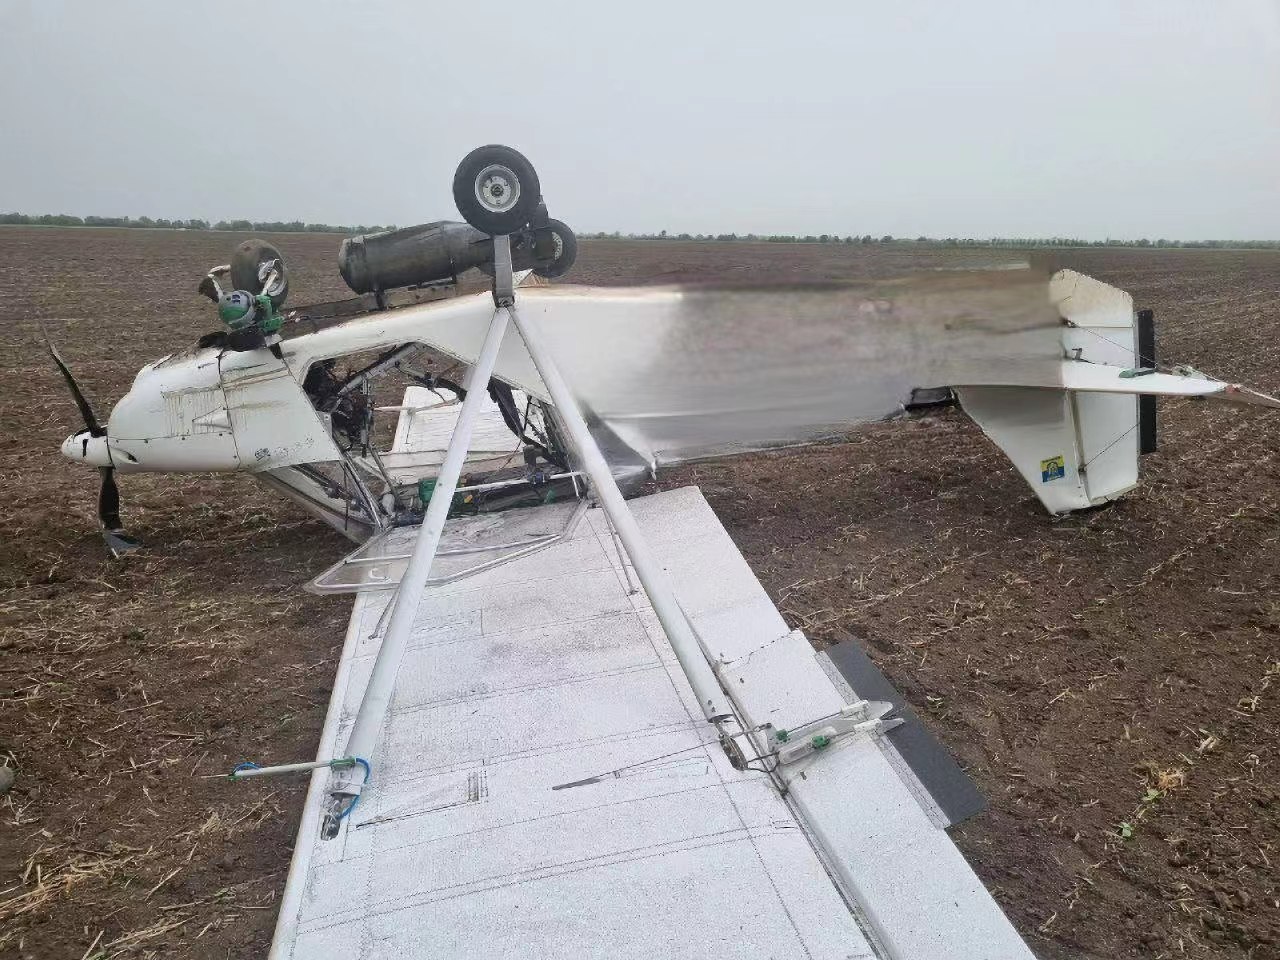 乌克兰E-300远程无人机携带航弹在俄罗斯坠毁